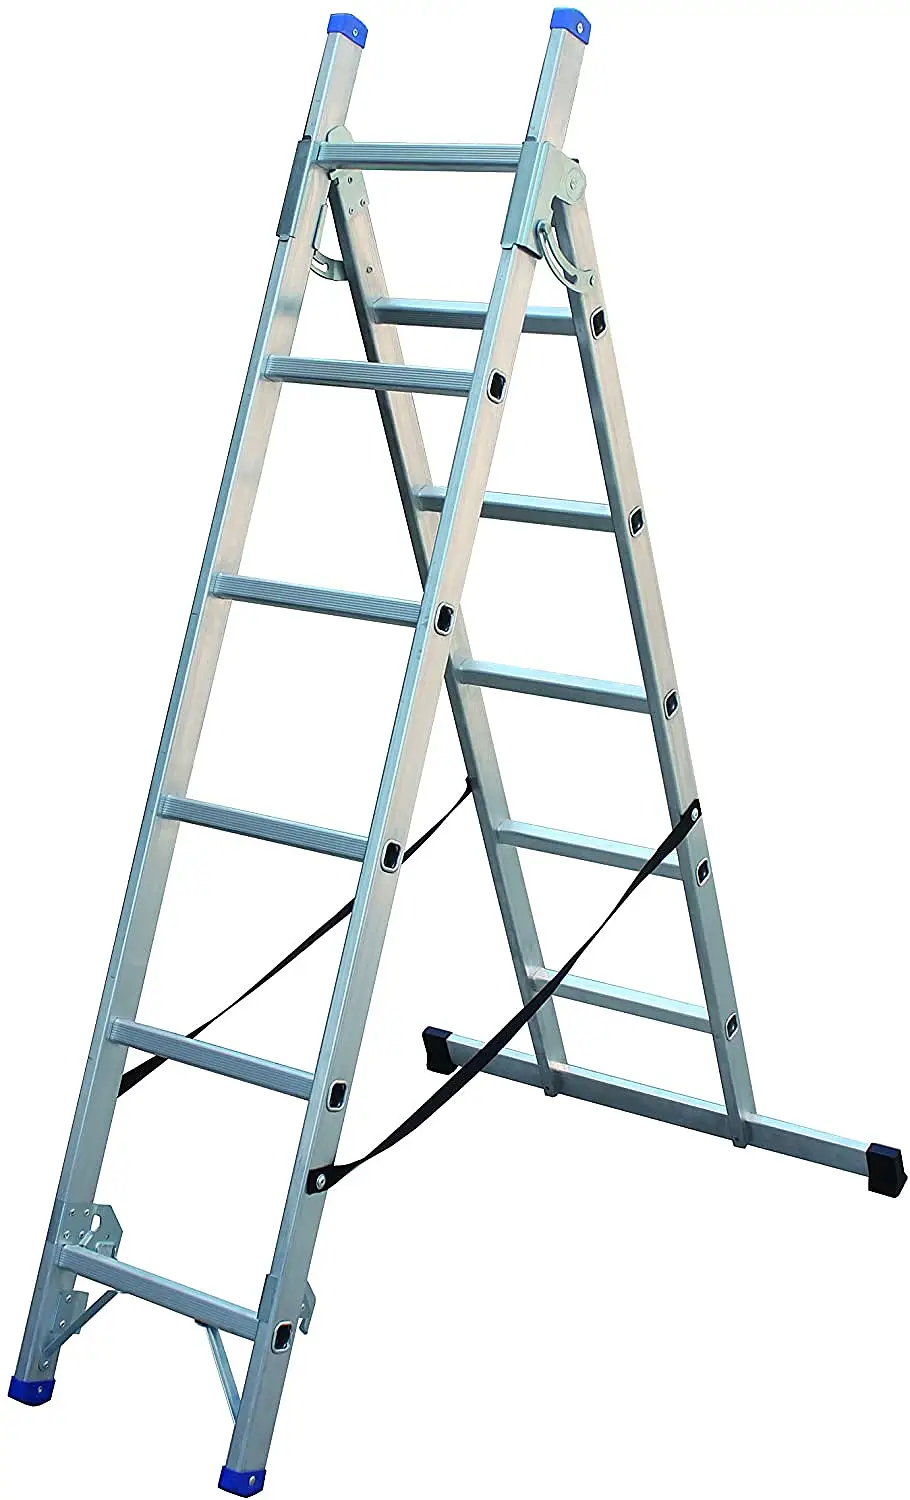 Combinação Step Ladder 3 Way ‘Bae124; Aluminium Step Ladders ‘Bae124; Escada Da Escada Escada Da Escada Escada Escada de Escada de Escada de Escada de Escada de Escada de Escada de Escada ”